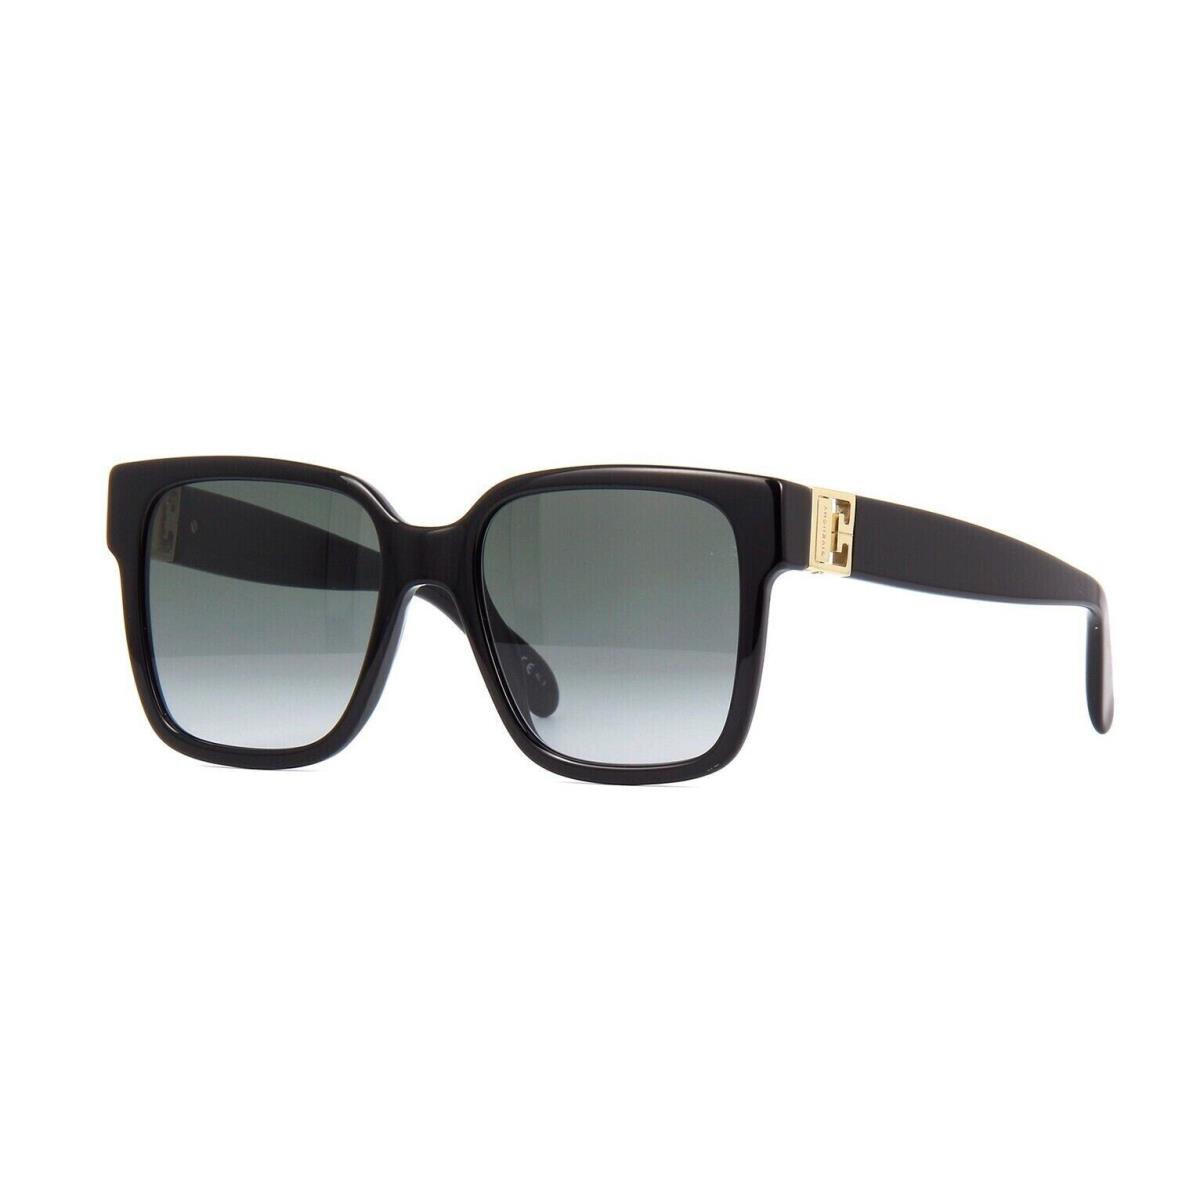 Givenchy GV 7141/G/S Black/grey Shaded 807/9O Sunglasses